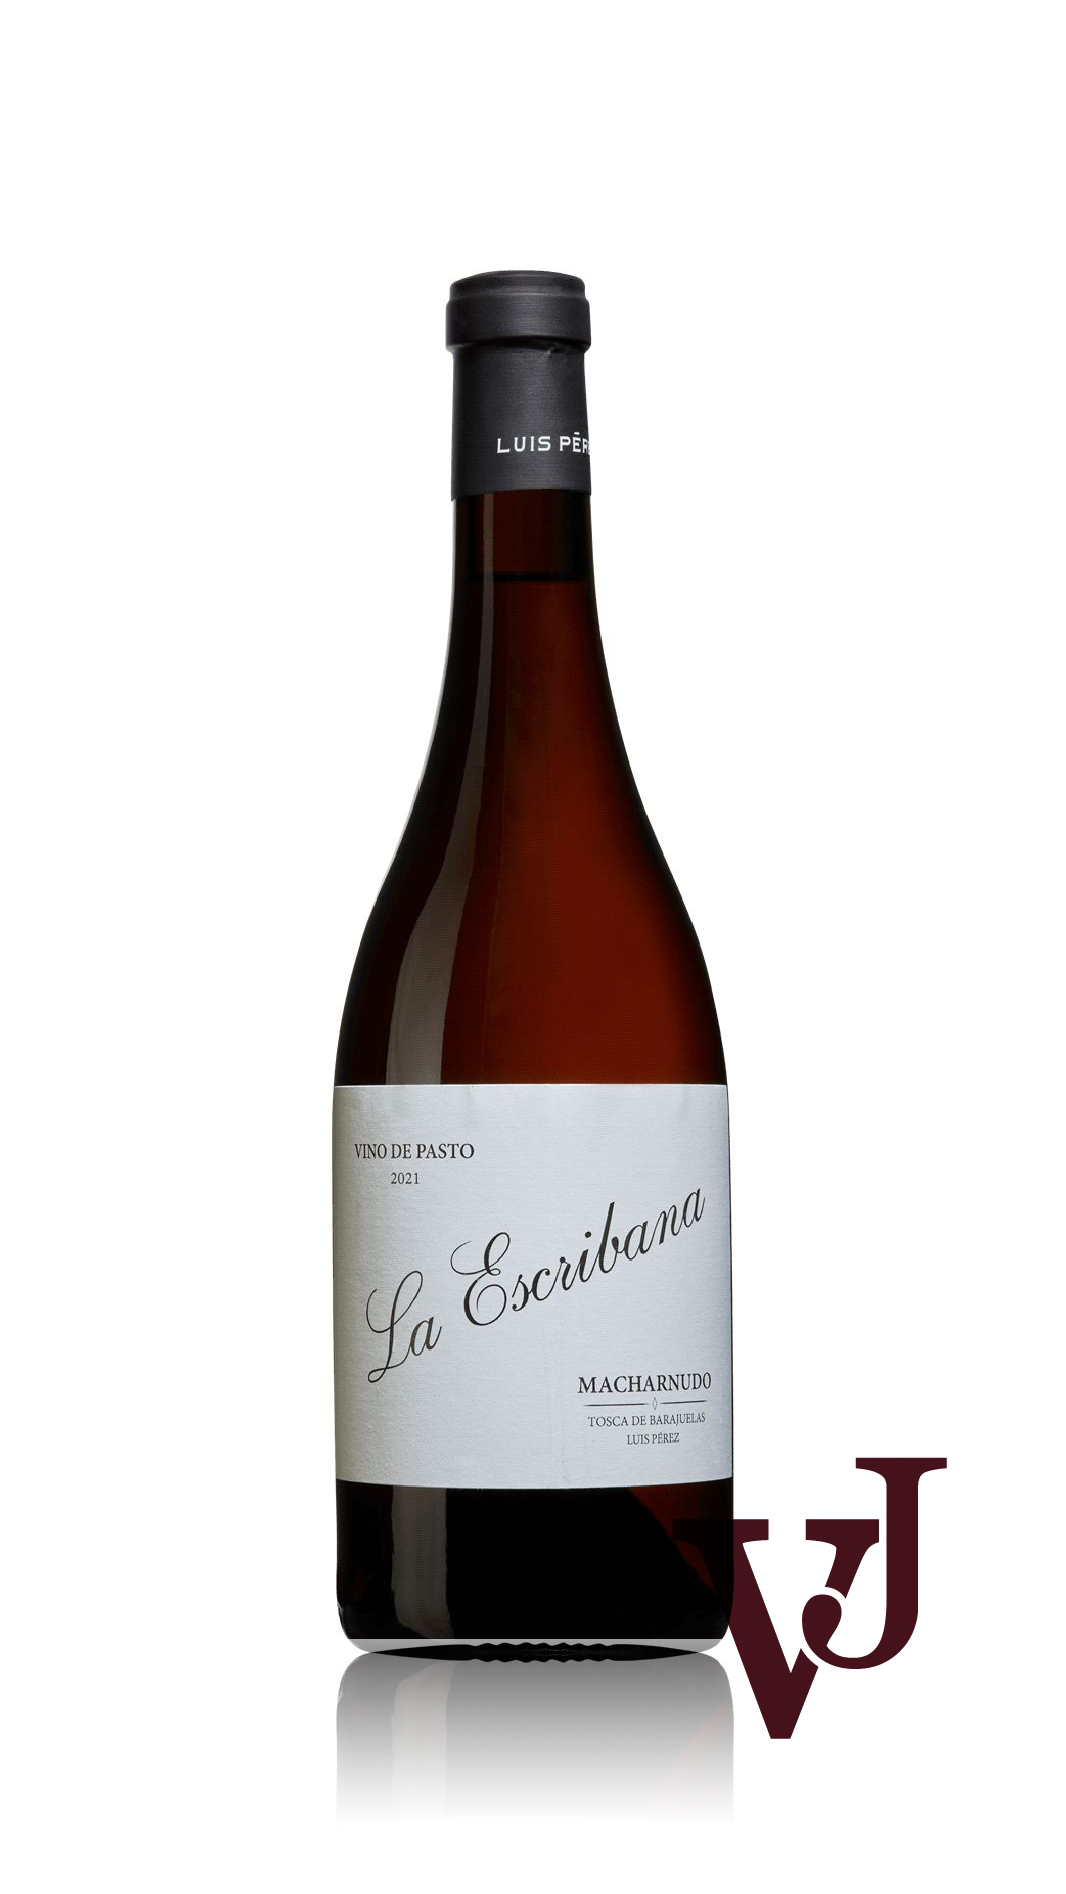 Vitt Vin - La Escribana Vino de Pasto 2021 artikel nummer 9427901 från producenten Bodegas Luis Pérez S.L. från Spanien.